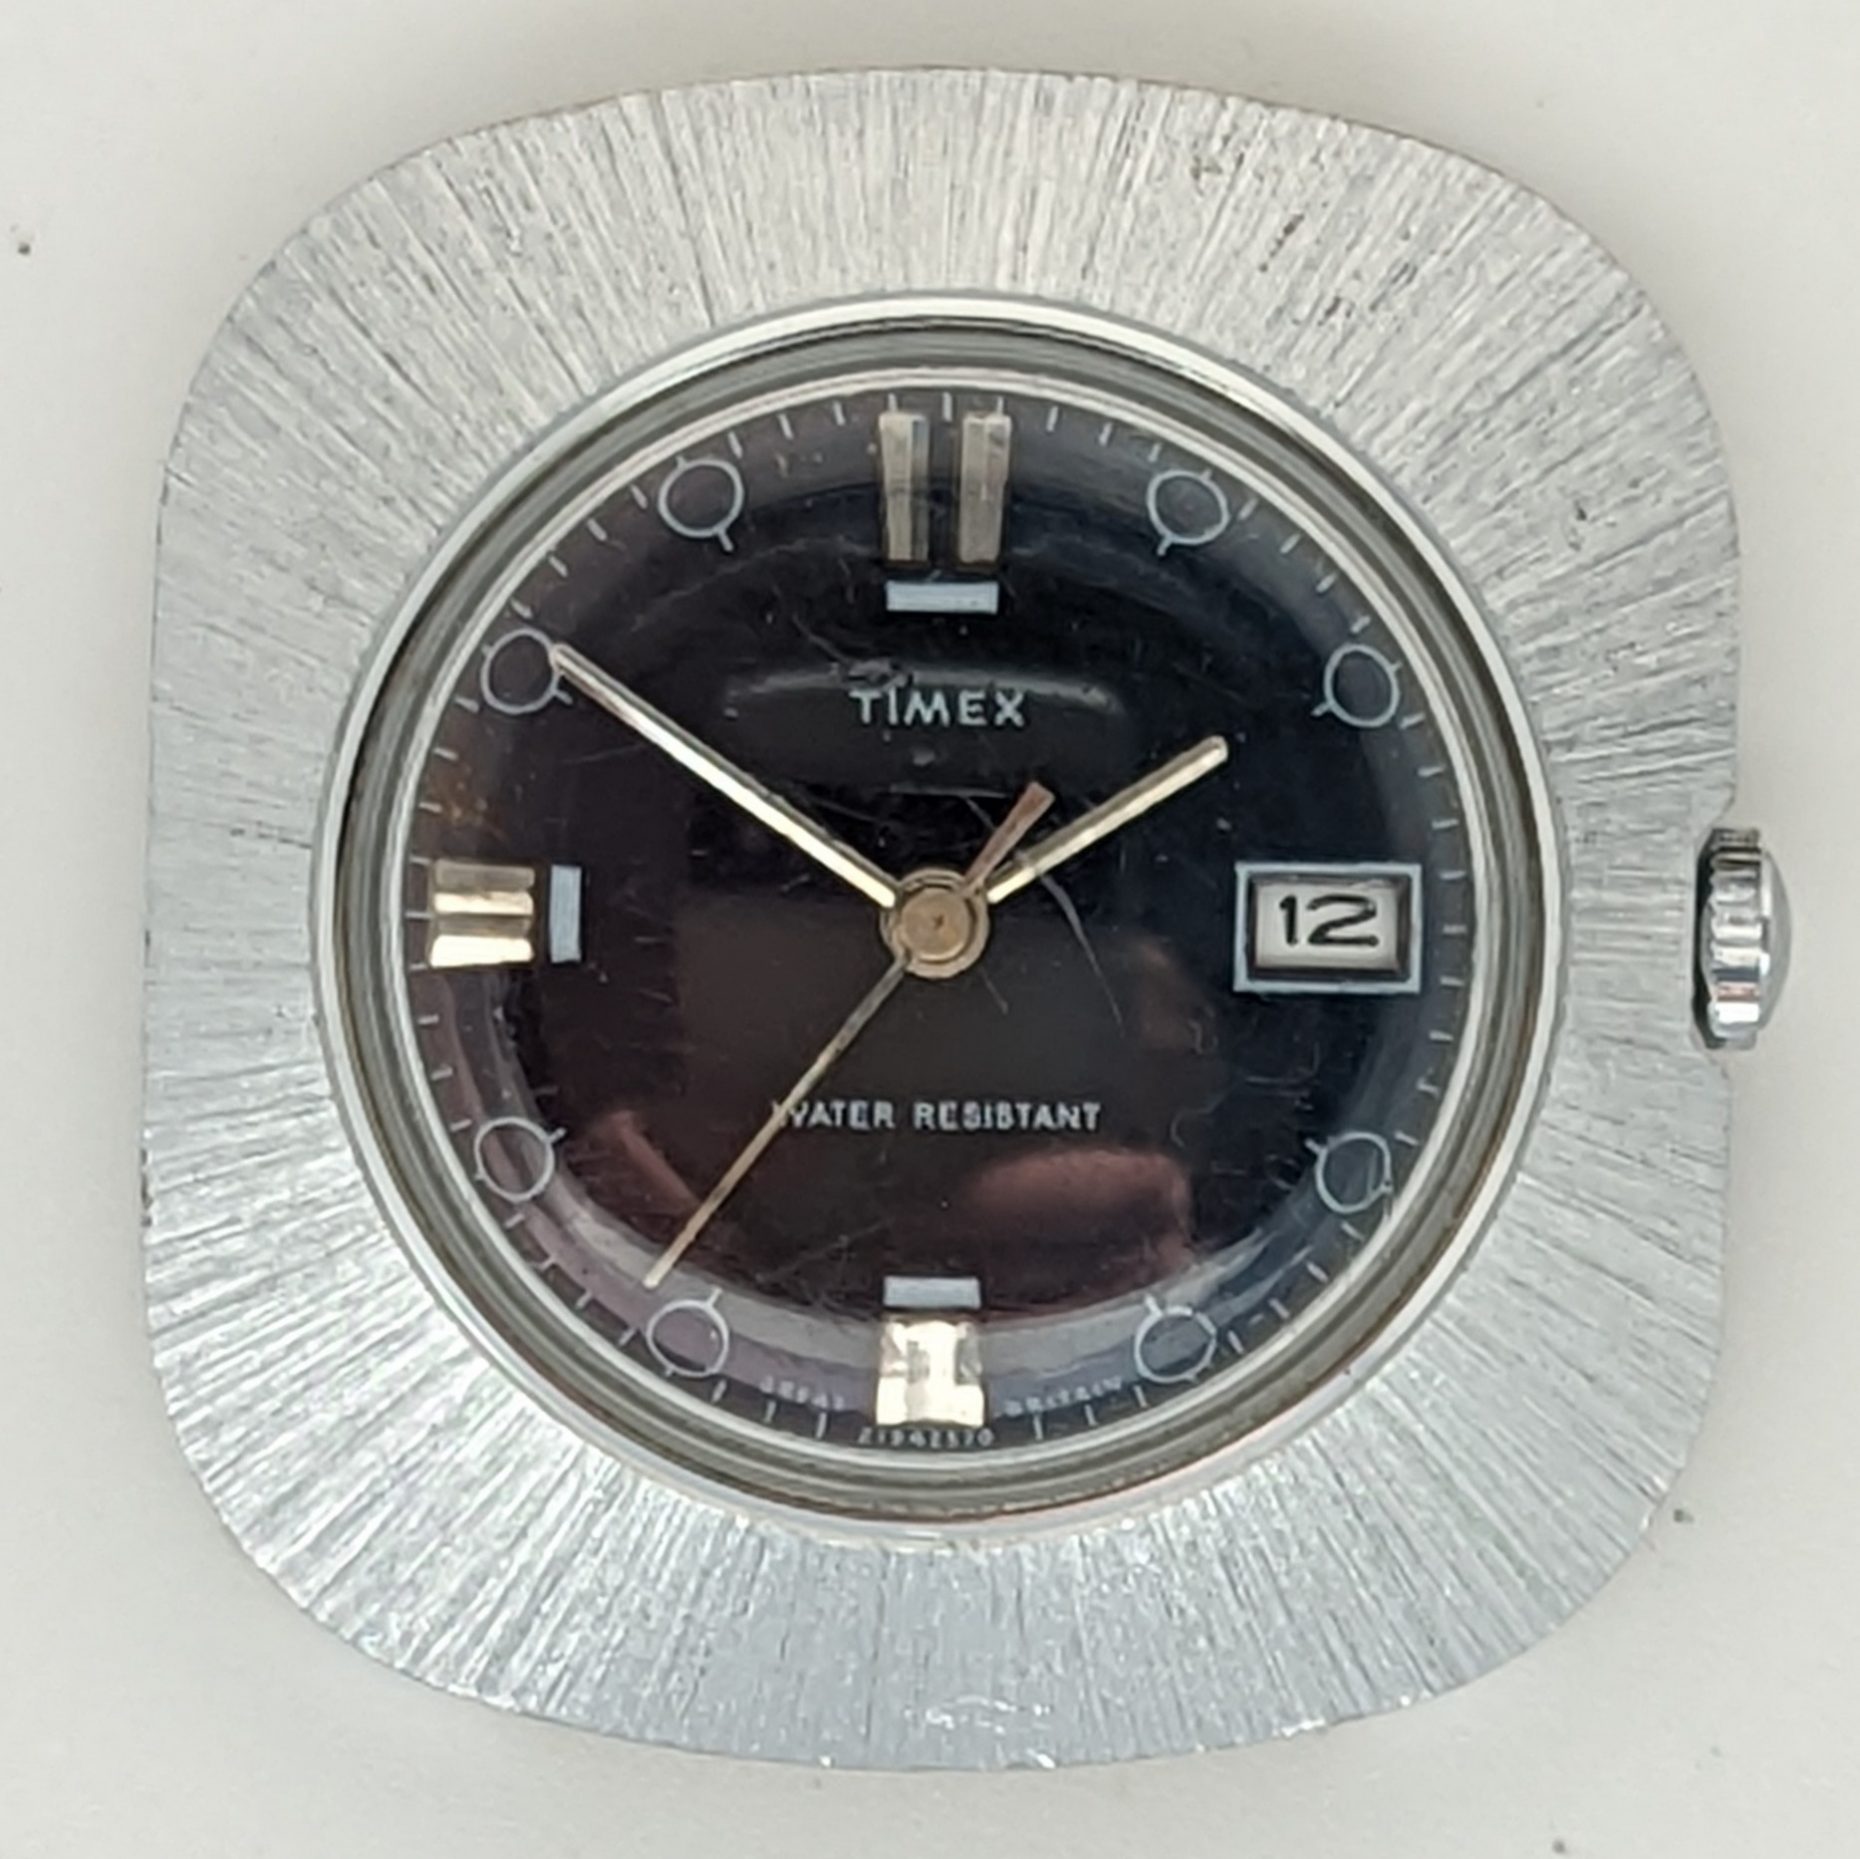 Timex Marlin 2194 2570 [1970]